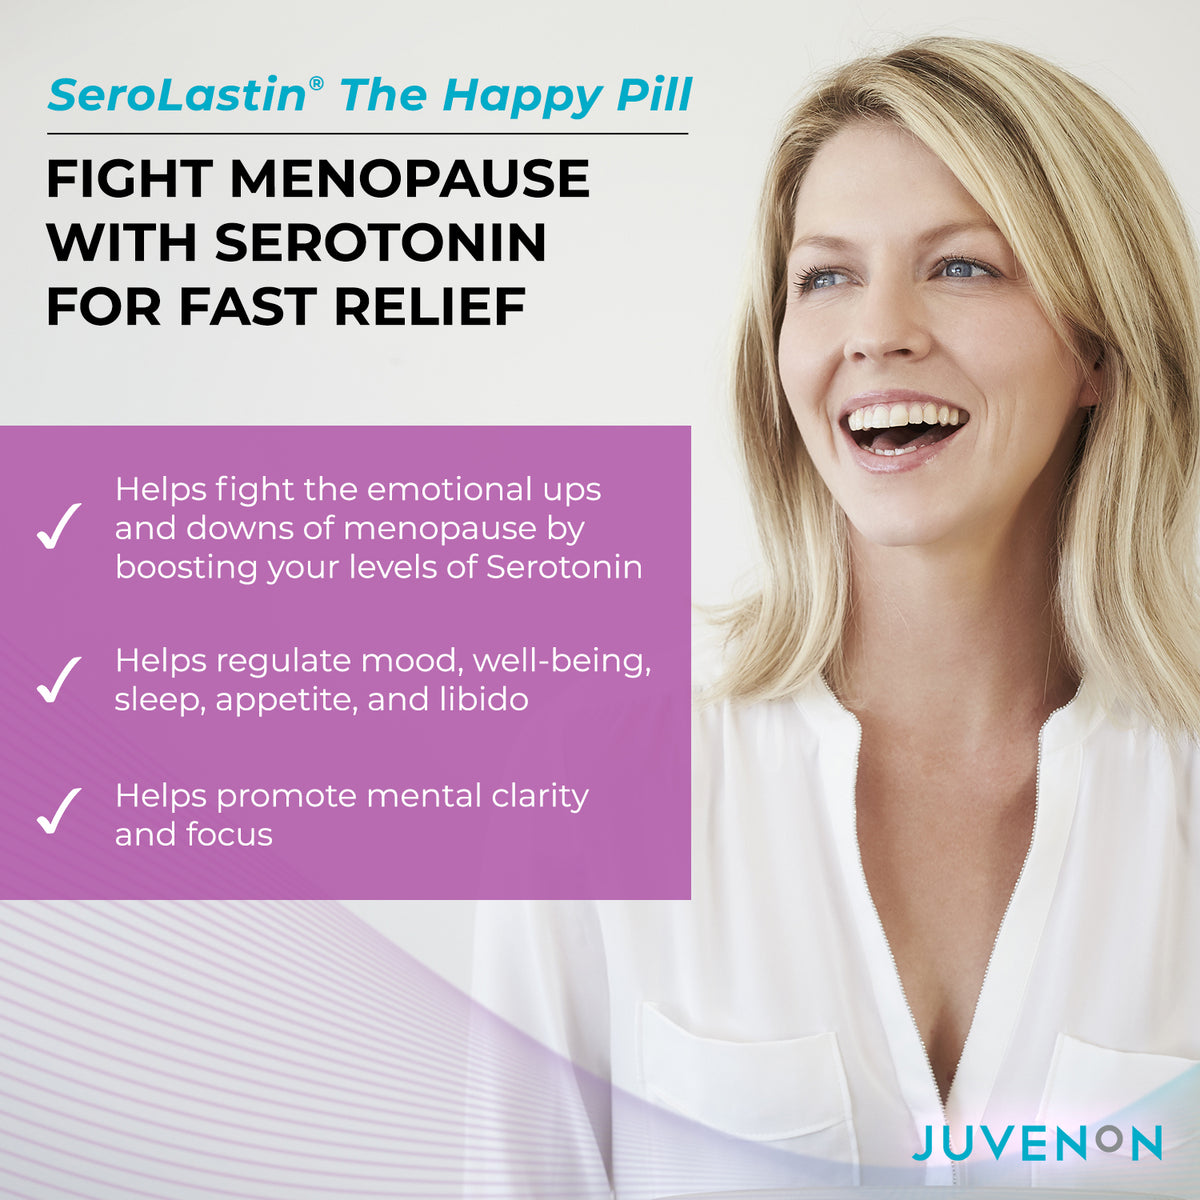 SeroLastin customer highlights menopause symptom relief